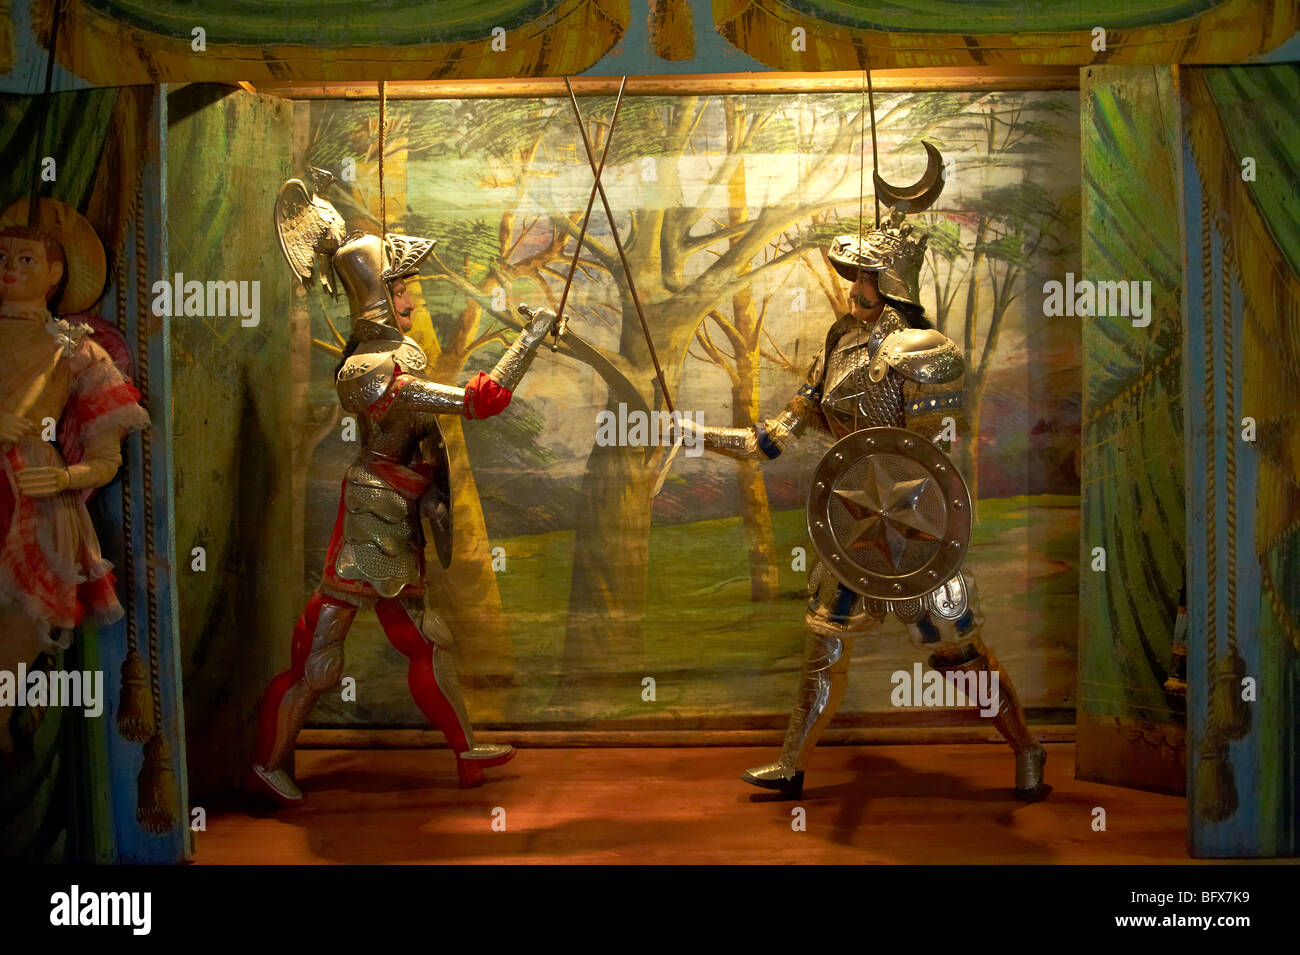 Musée du théâtre de marionnettes traditionnelles, Marionnettes siciliennes, Palerme, Sicile Banque D'Images